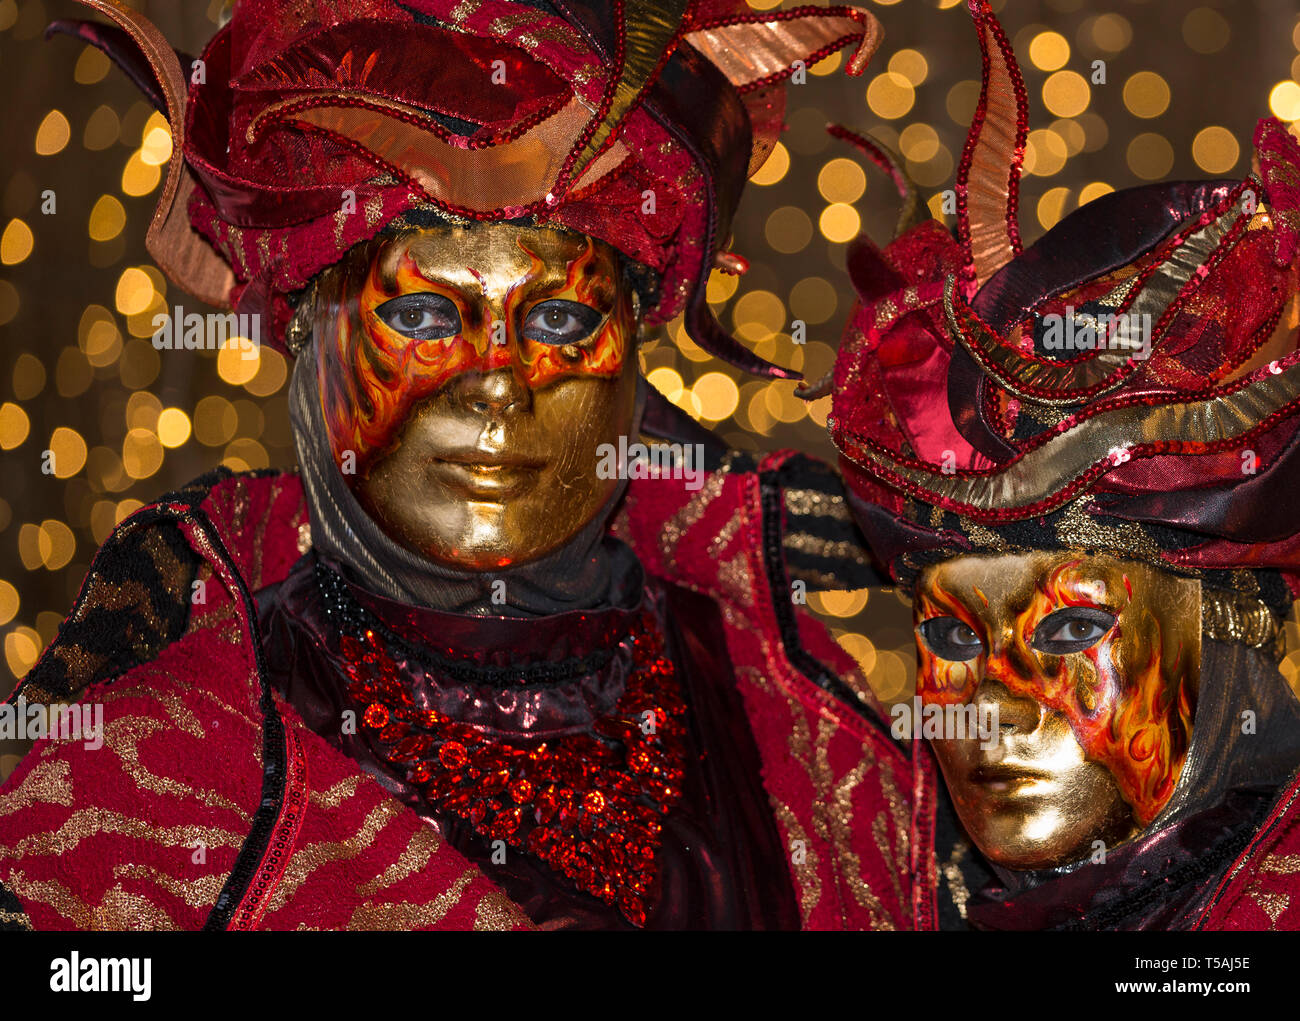 Carnaval de Venise couple wearing fire masques et costumes rouge, l'Italie, portrait de nuit avec lumières fond flou Banque D'Images